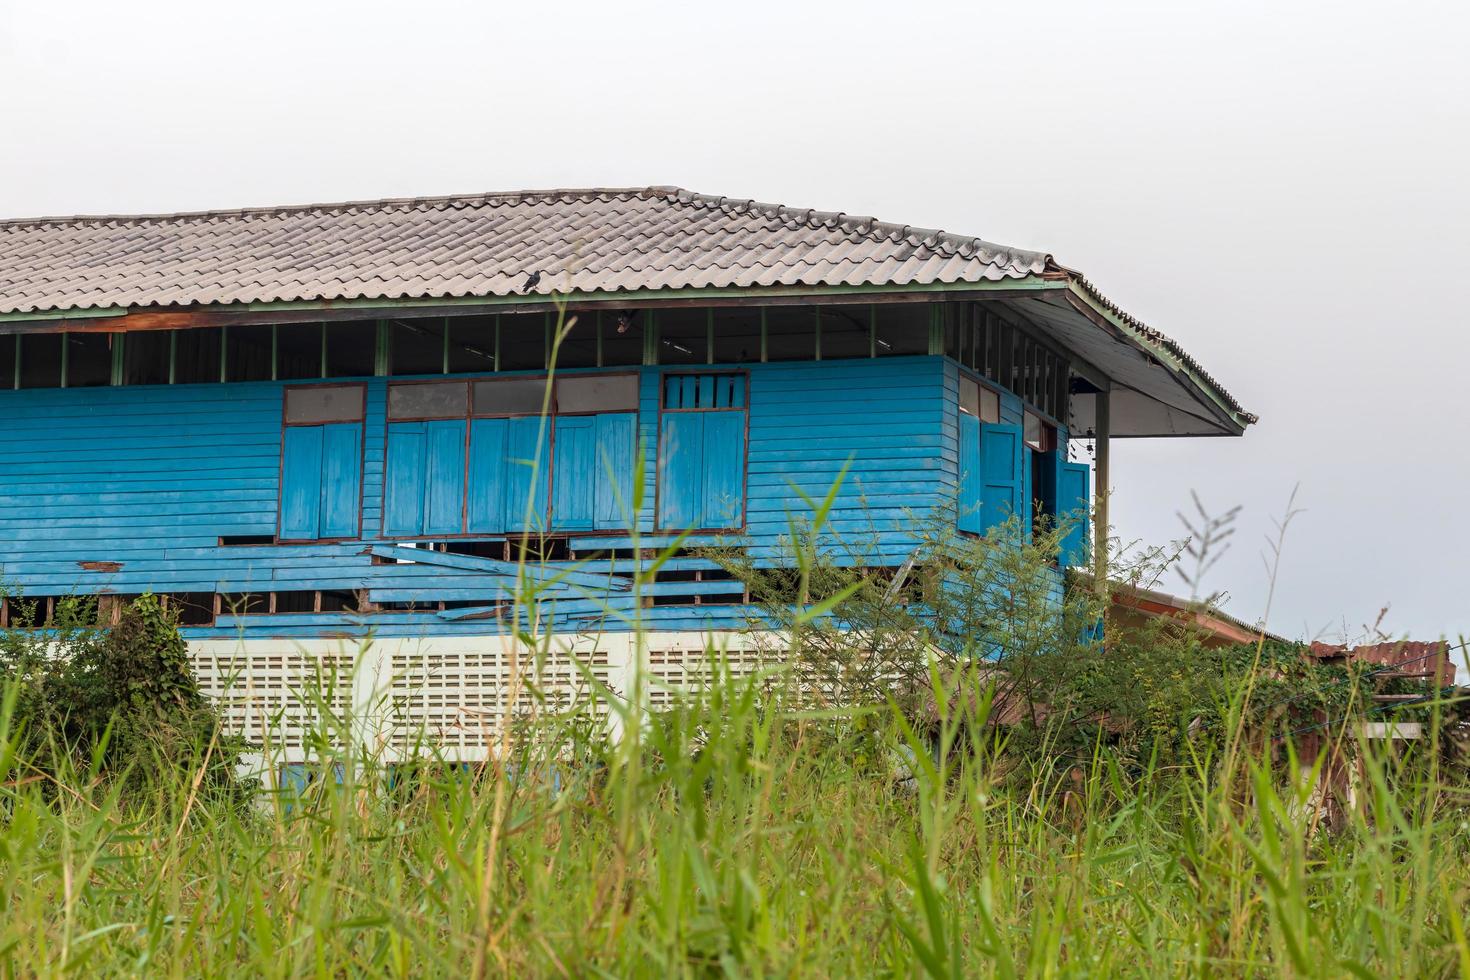 la madera azul de la vieja escuela está deteriorada. foto